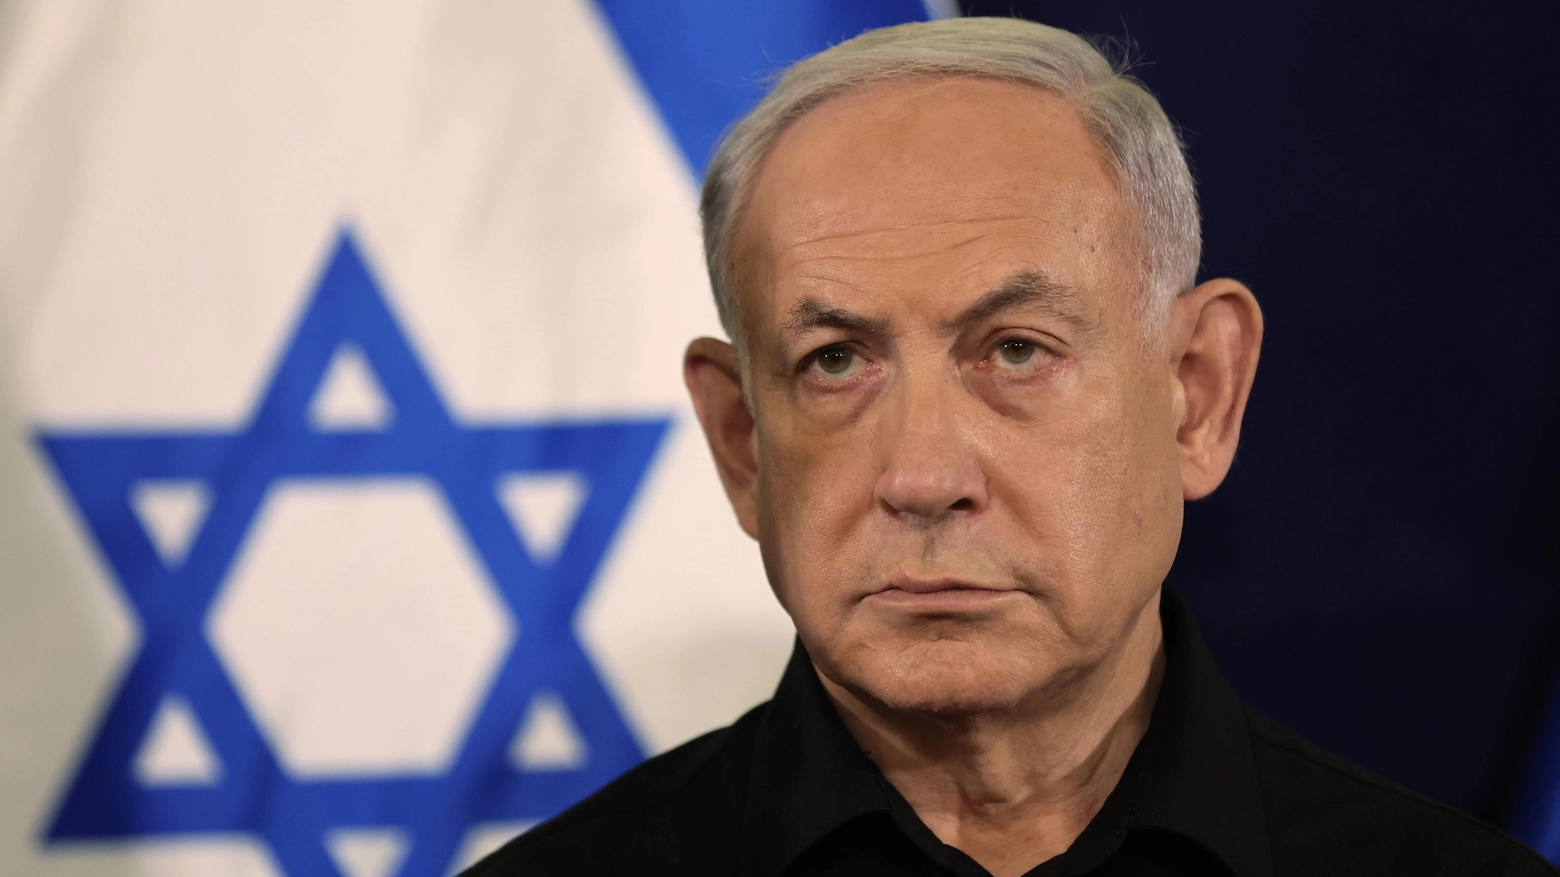 Bibi su tutte le furie per la decisione della Casa Bianca di astenersi alla votazione alle Nazioni Unite. Kirby: “Delusi che non vengano a discutere alternative praticabili per Rafah”